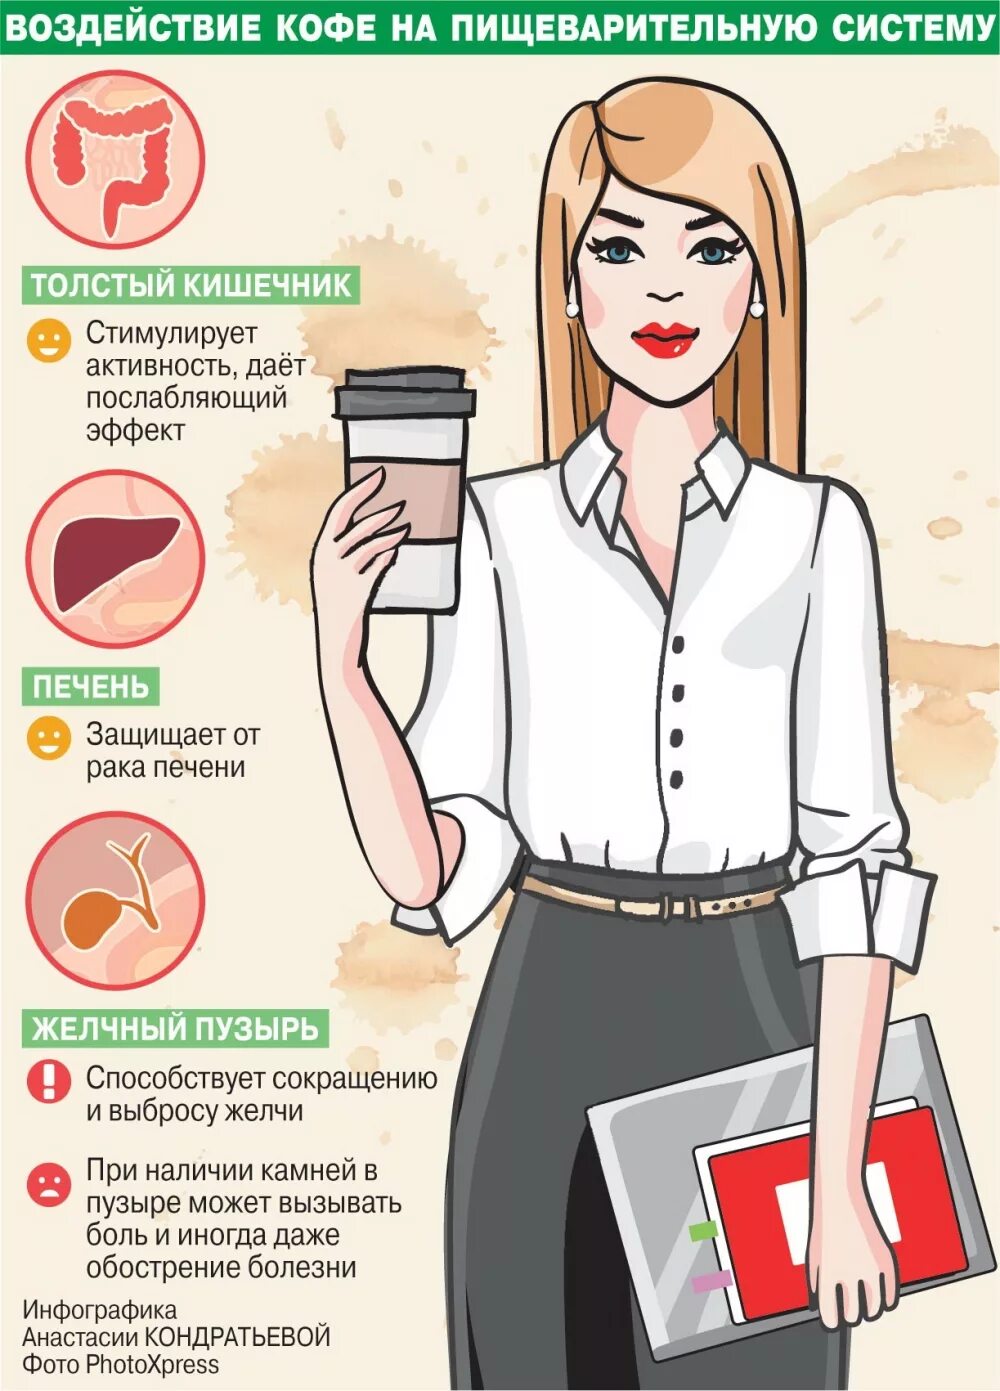 Кофе вредно. Полезность кофе для организма. Польза кофе. Влияние кофе на организм человека.